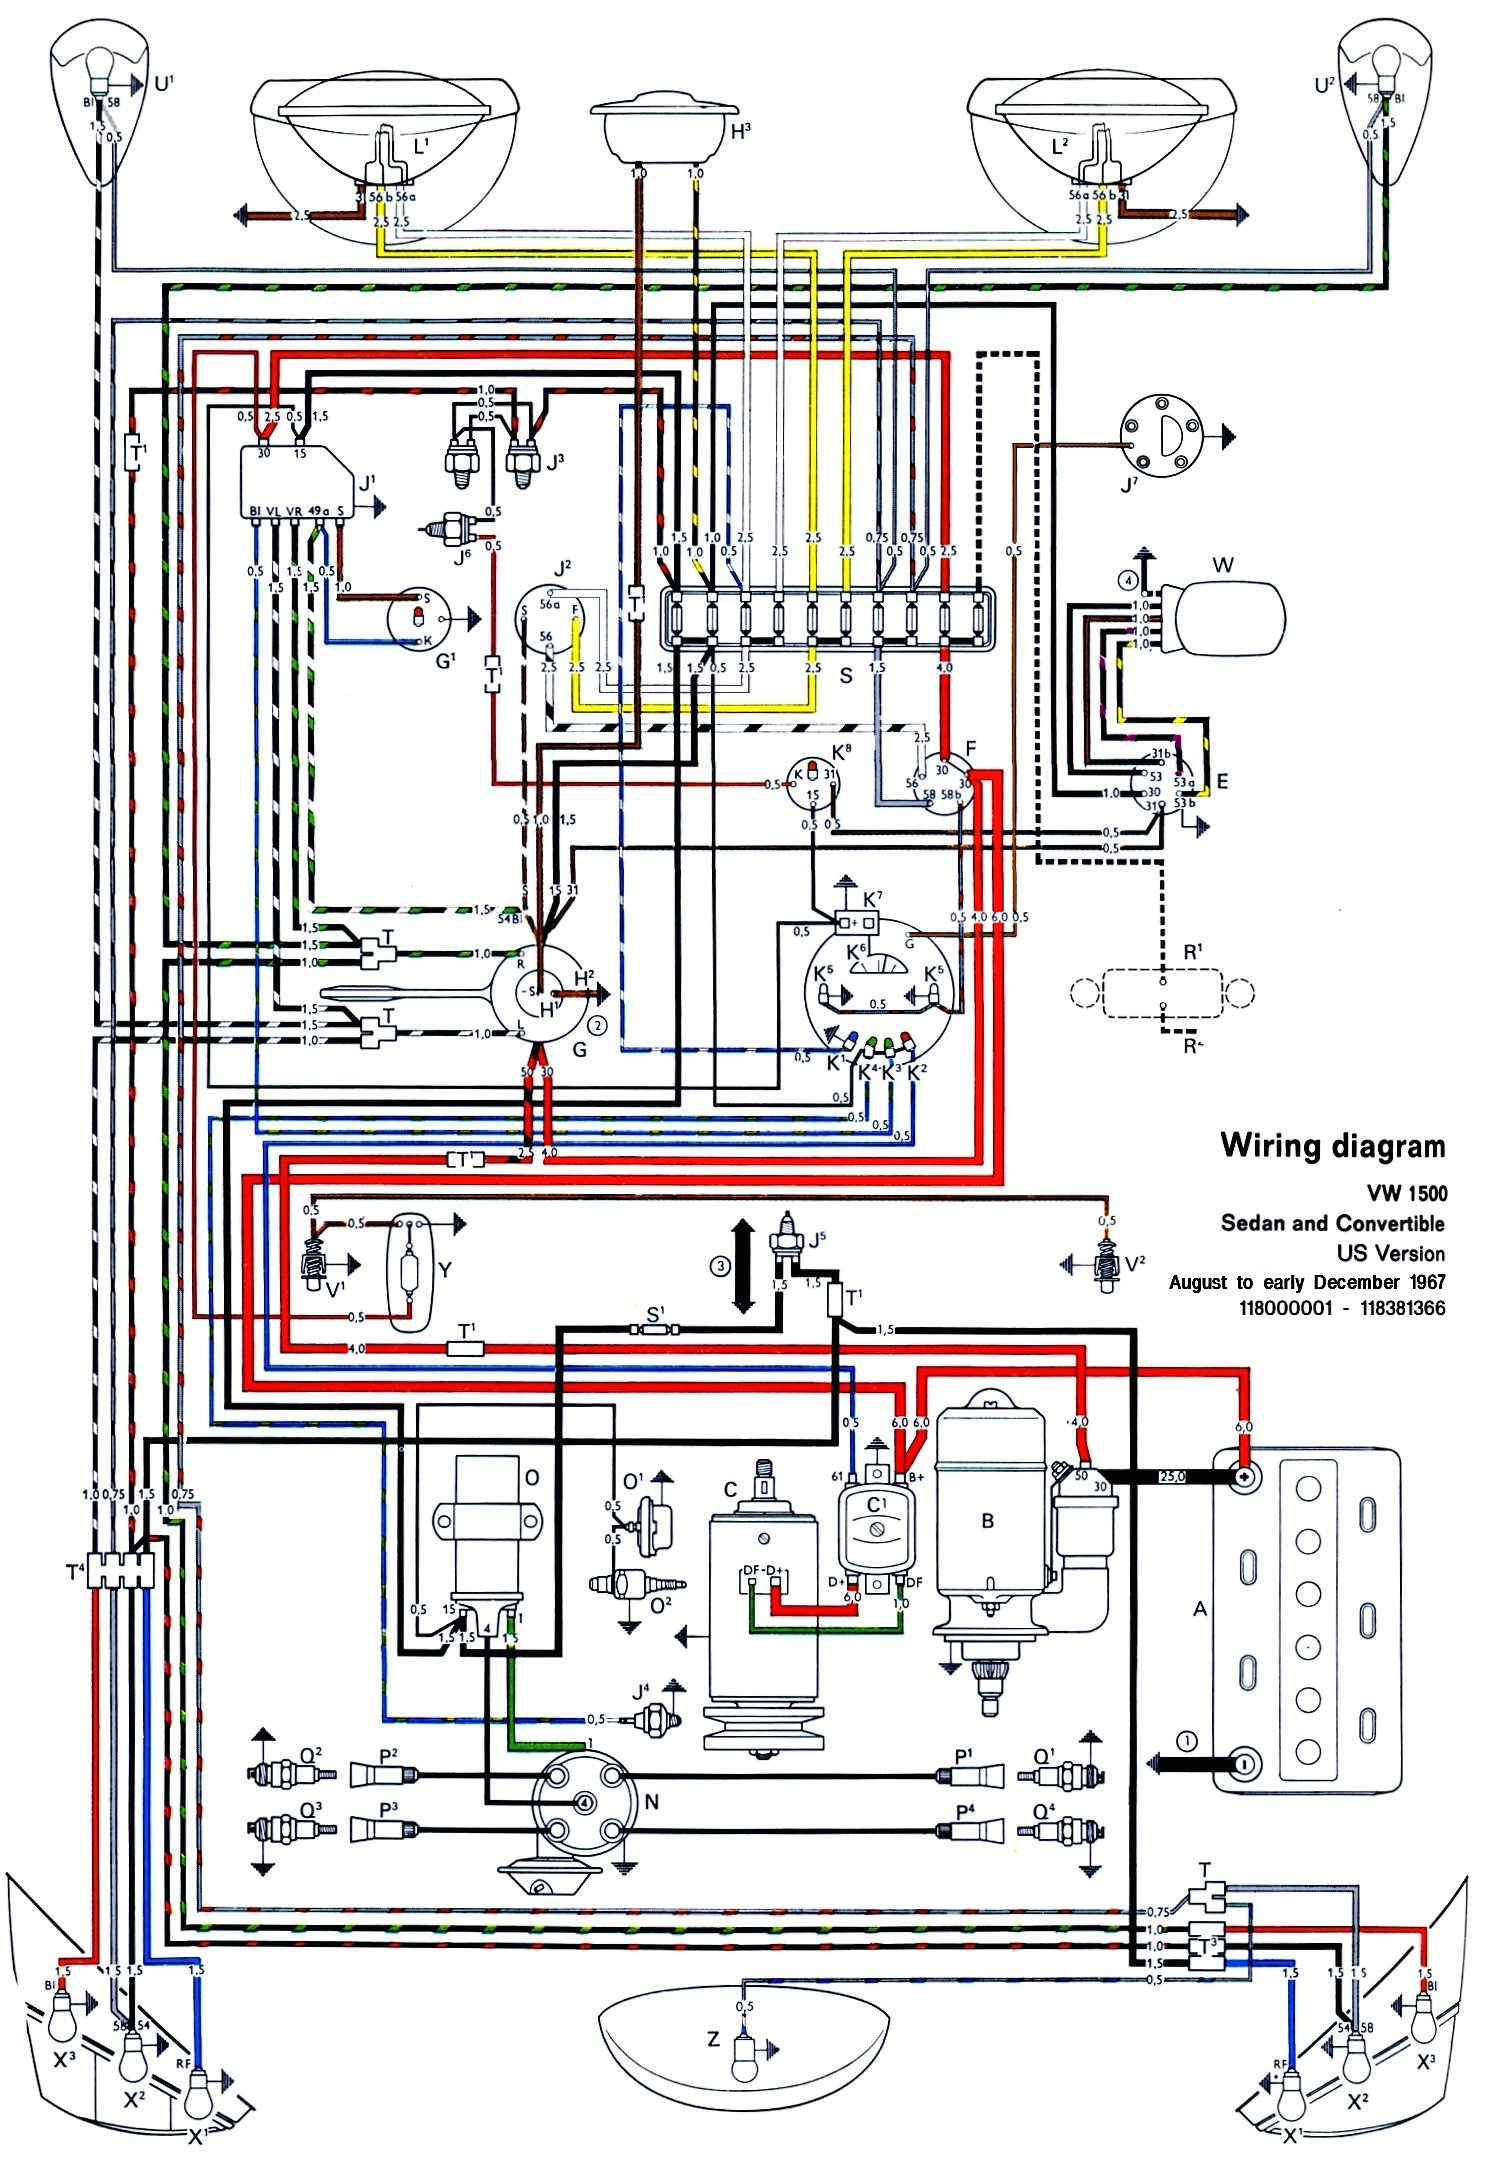 73 vw beetle radio wiring online manuual of wiring diagram wiring diagram for 1973 vw beetle